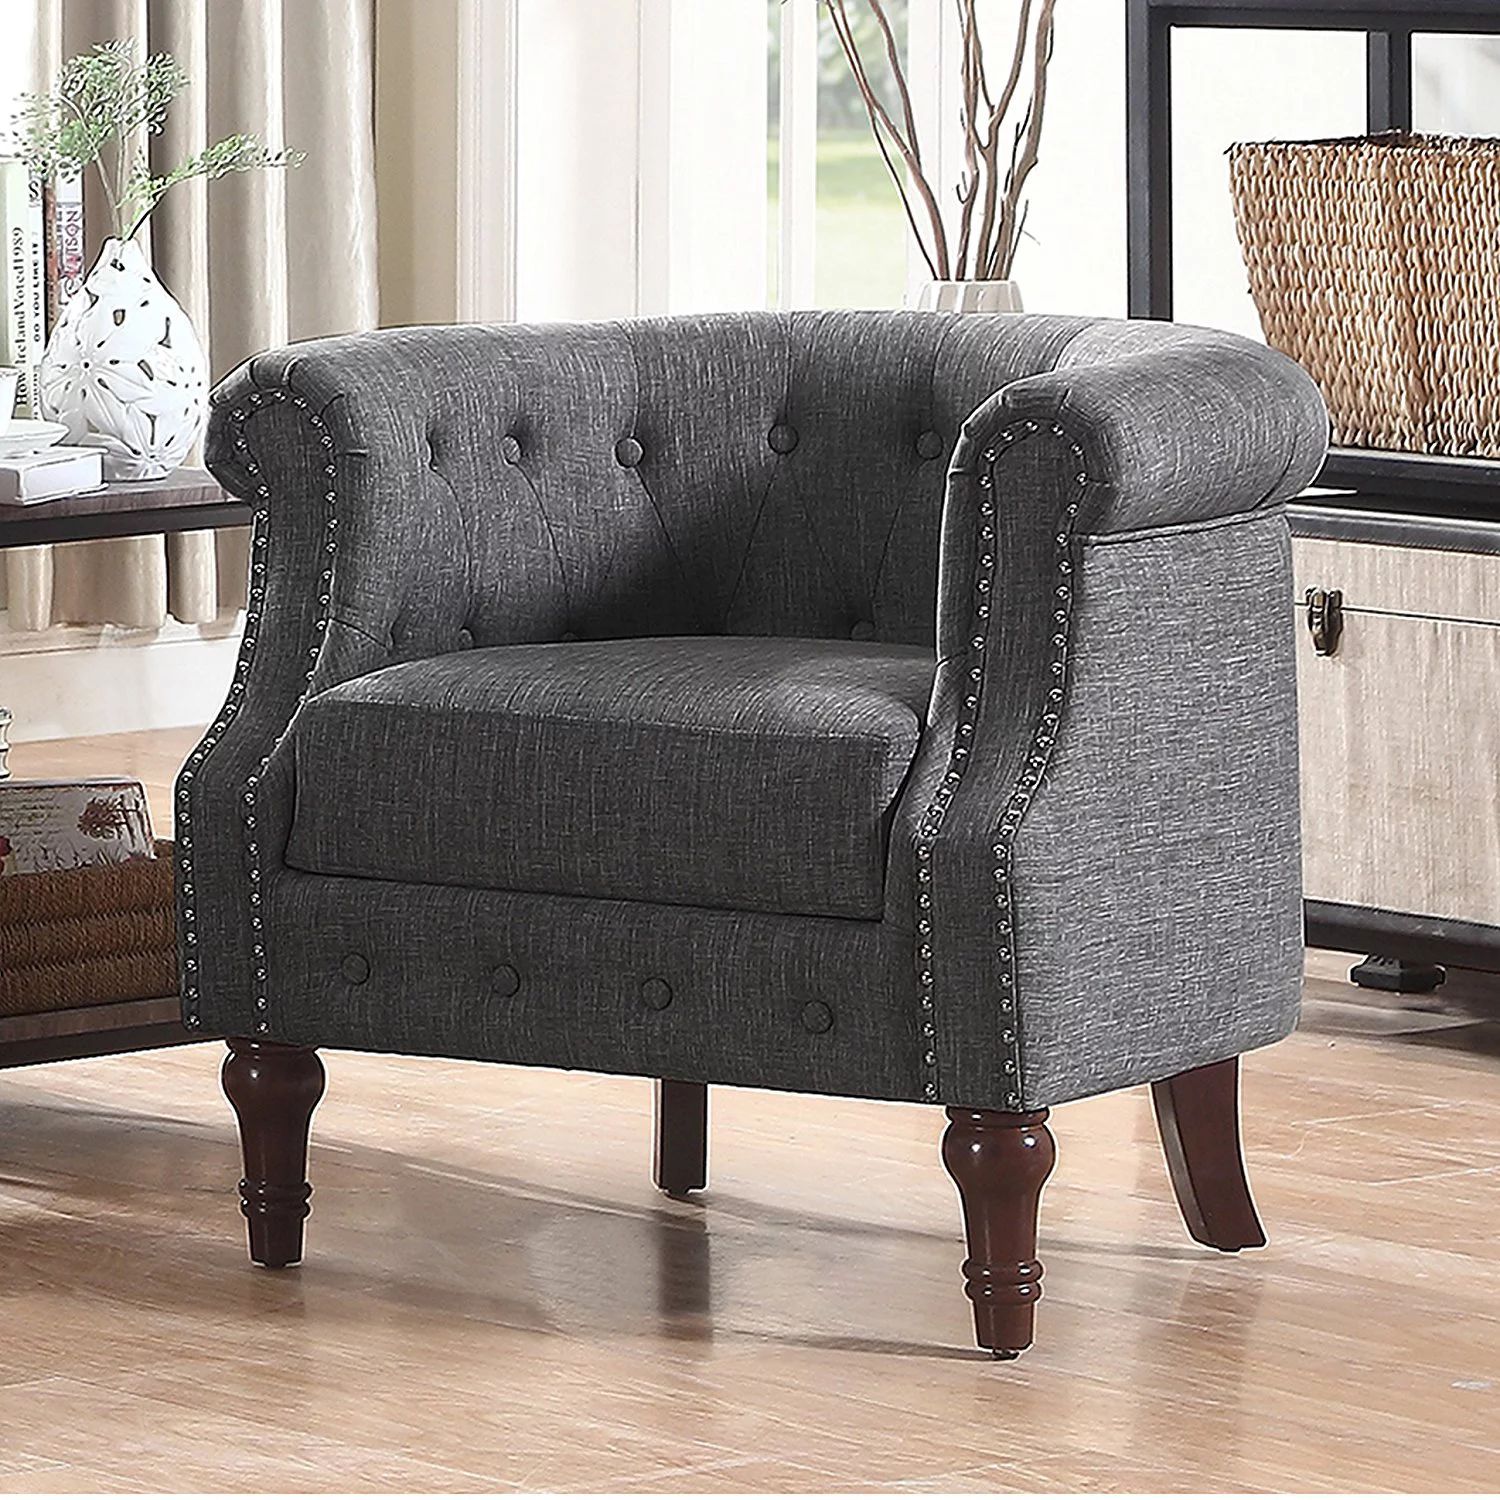 Alton Furniture Da Vigo Tufted Barrel/Club Chair With Nailhead Trim Arms | Walmart (US)